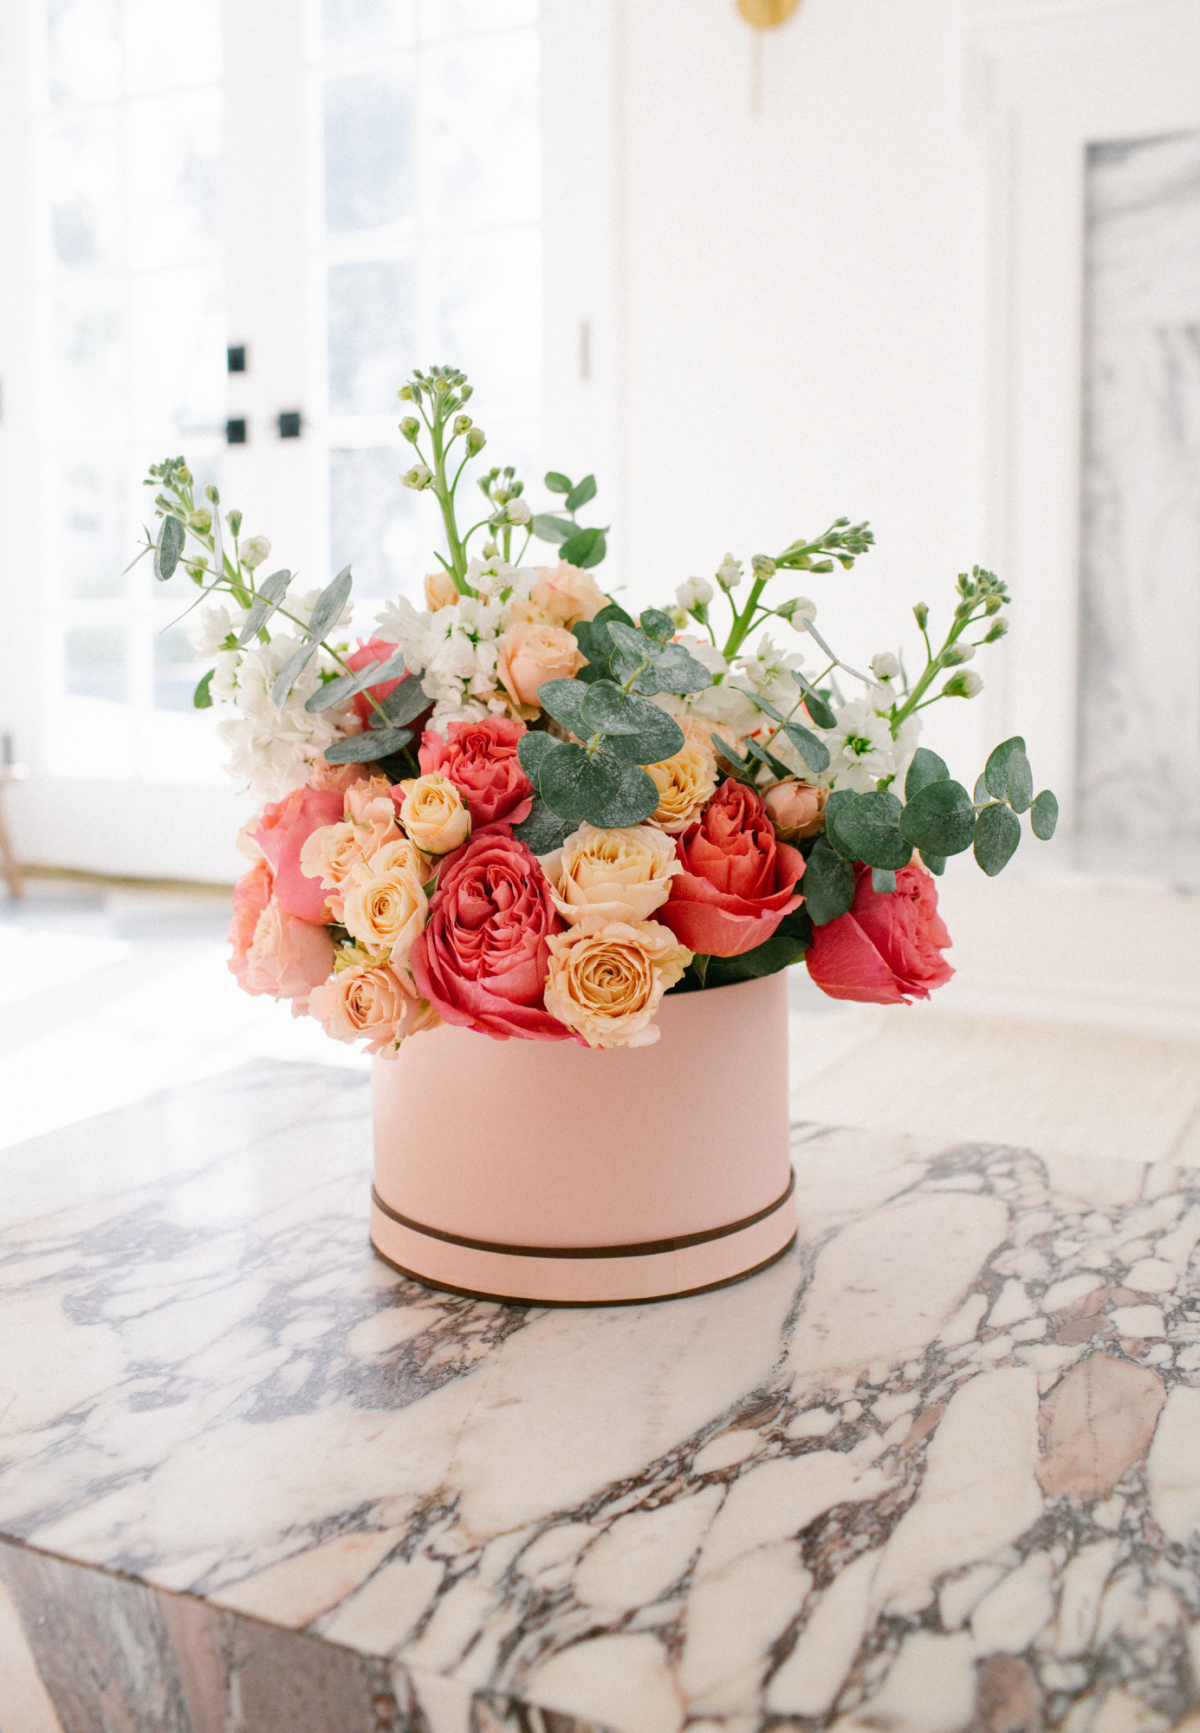 DIY Valentine's Day Flower Box Bouquet